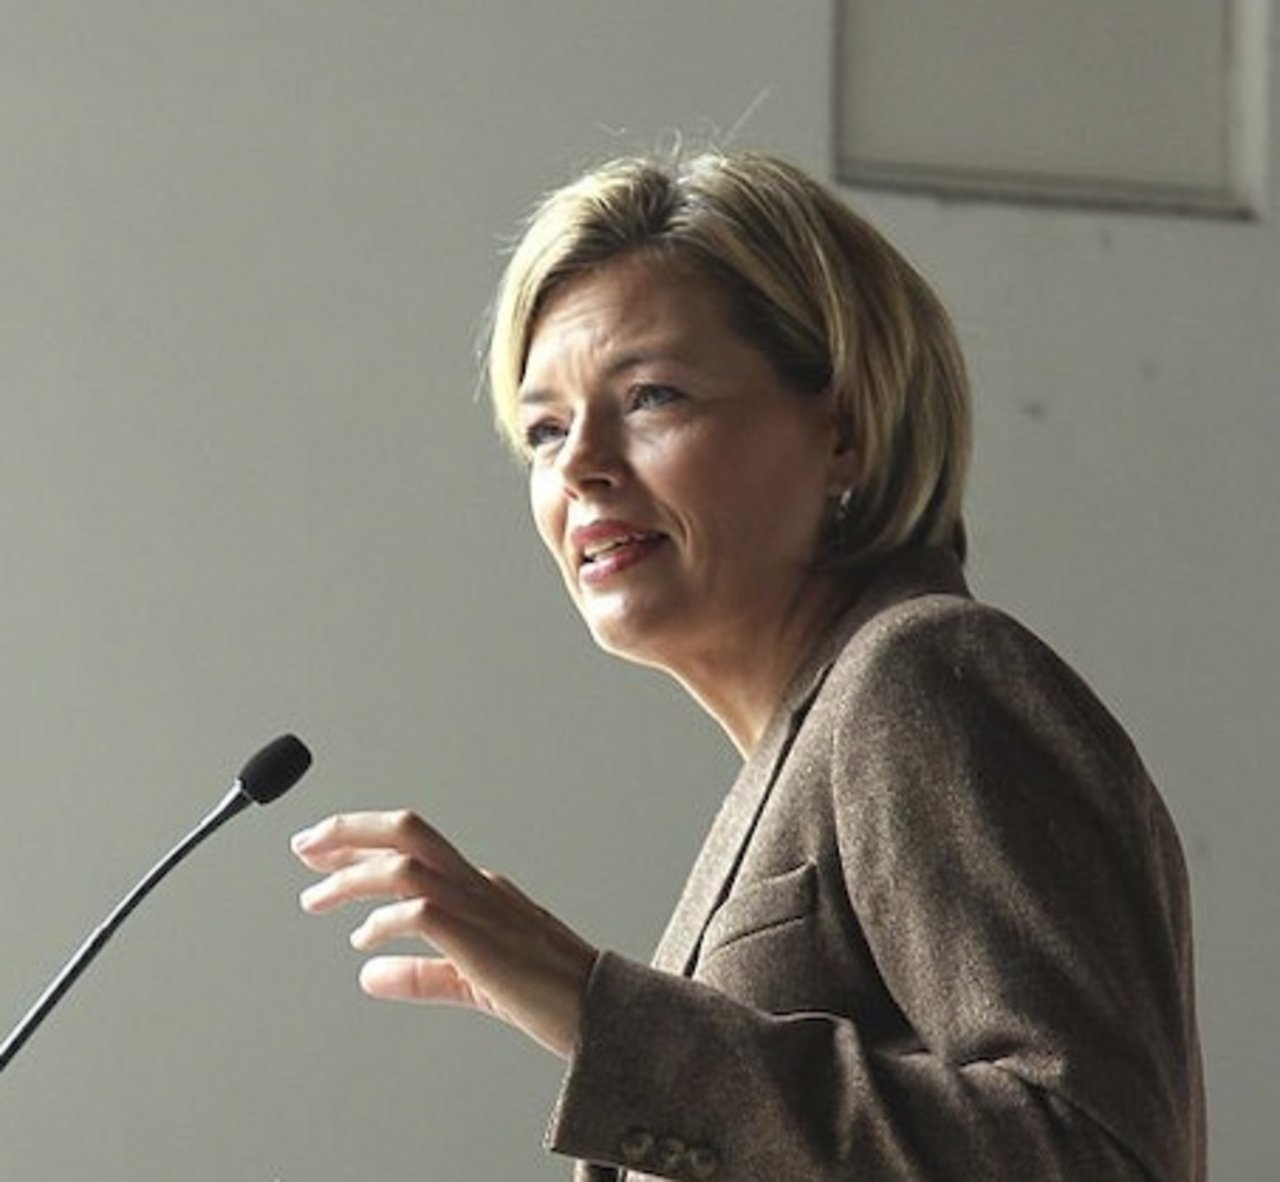  Julia Klöckner würde ist die dritte Frau an der Spitze des deutschen Landwirtschaftsministeriums. (Bild Lothar Spurzem)